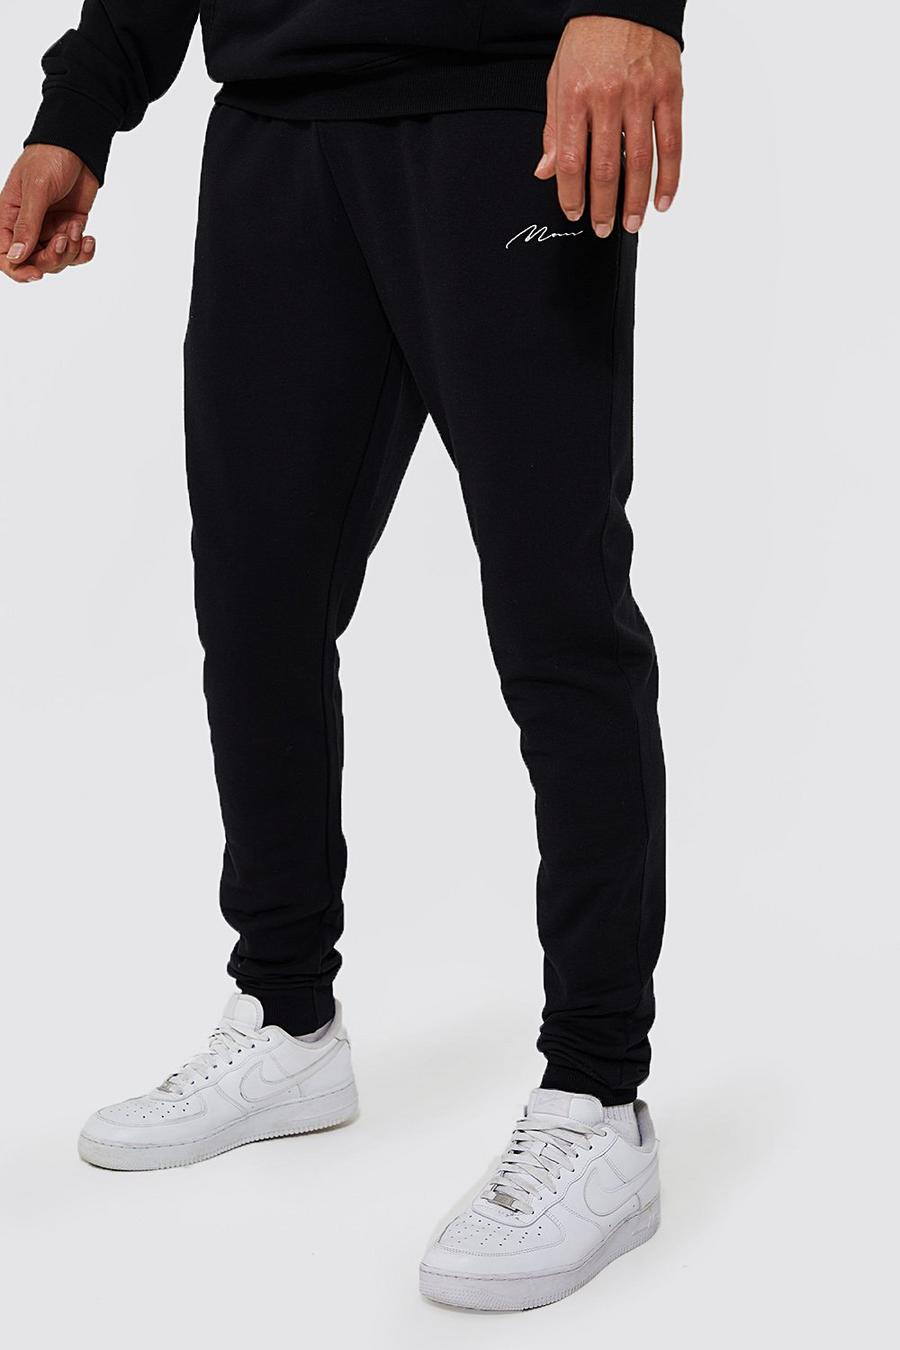 Pantalón deportivo Tall pitillo de tela jersey con algodón ecológico, Black